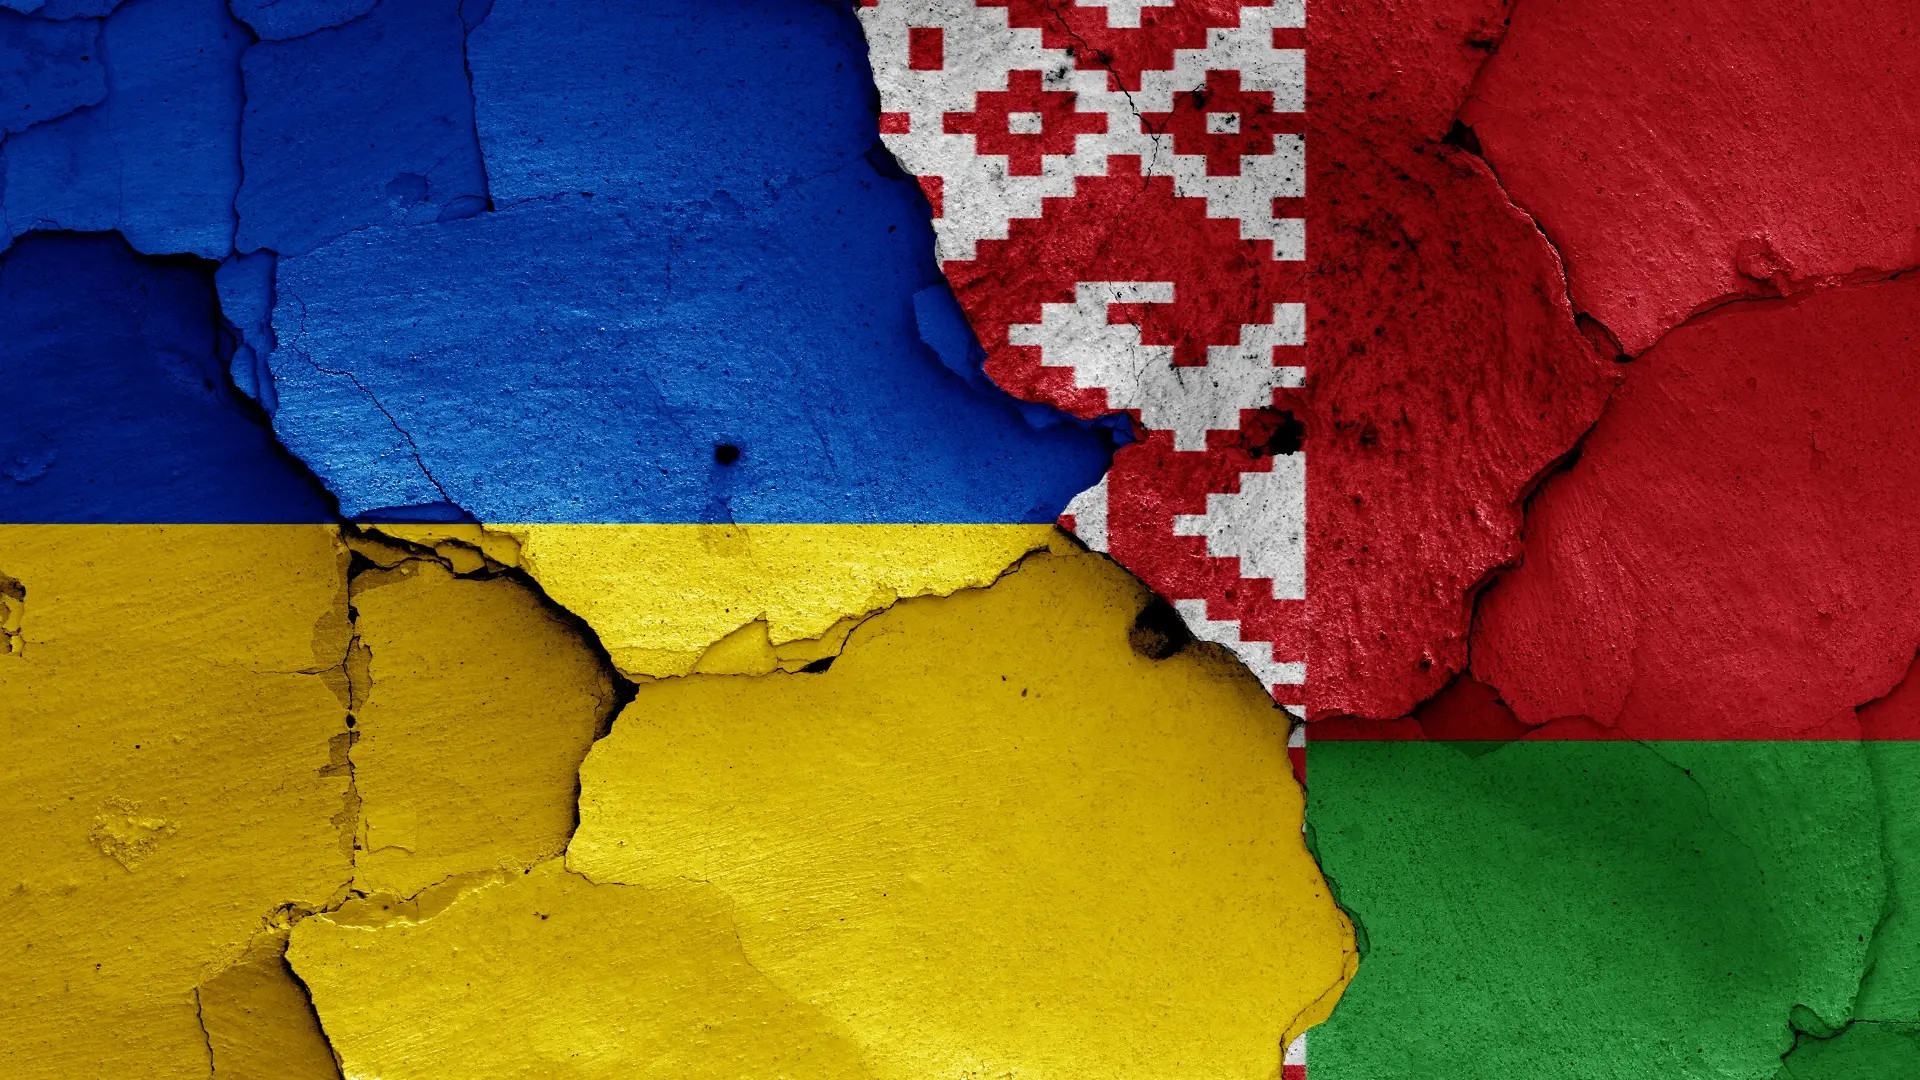 ukrajina, belorusija, zastave ukrajine belorusije, ukrajinska beloruska zastava - shutterstock-668008eb9df64.webp